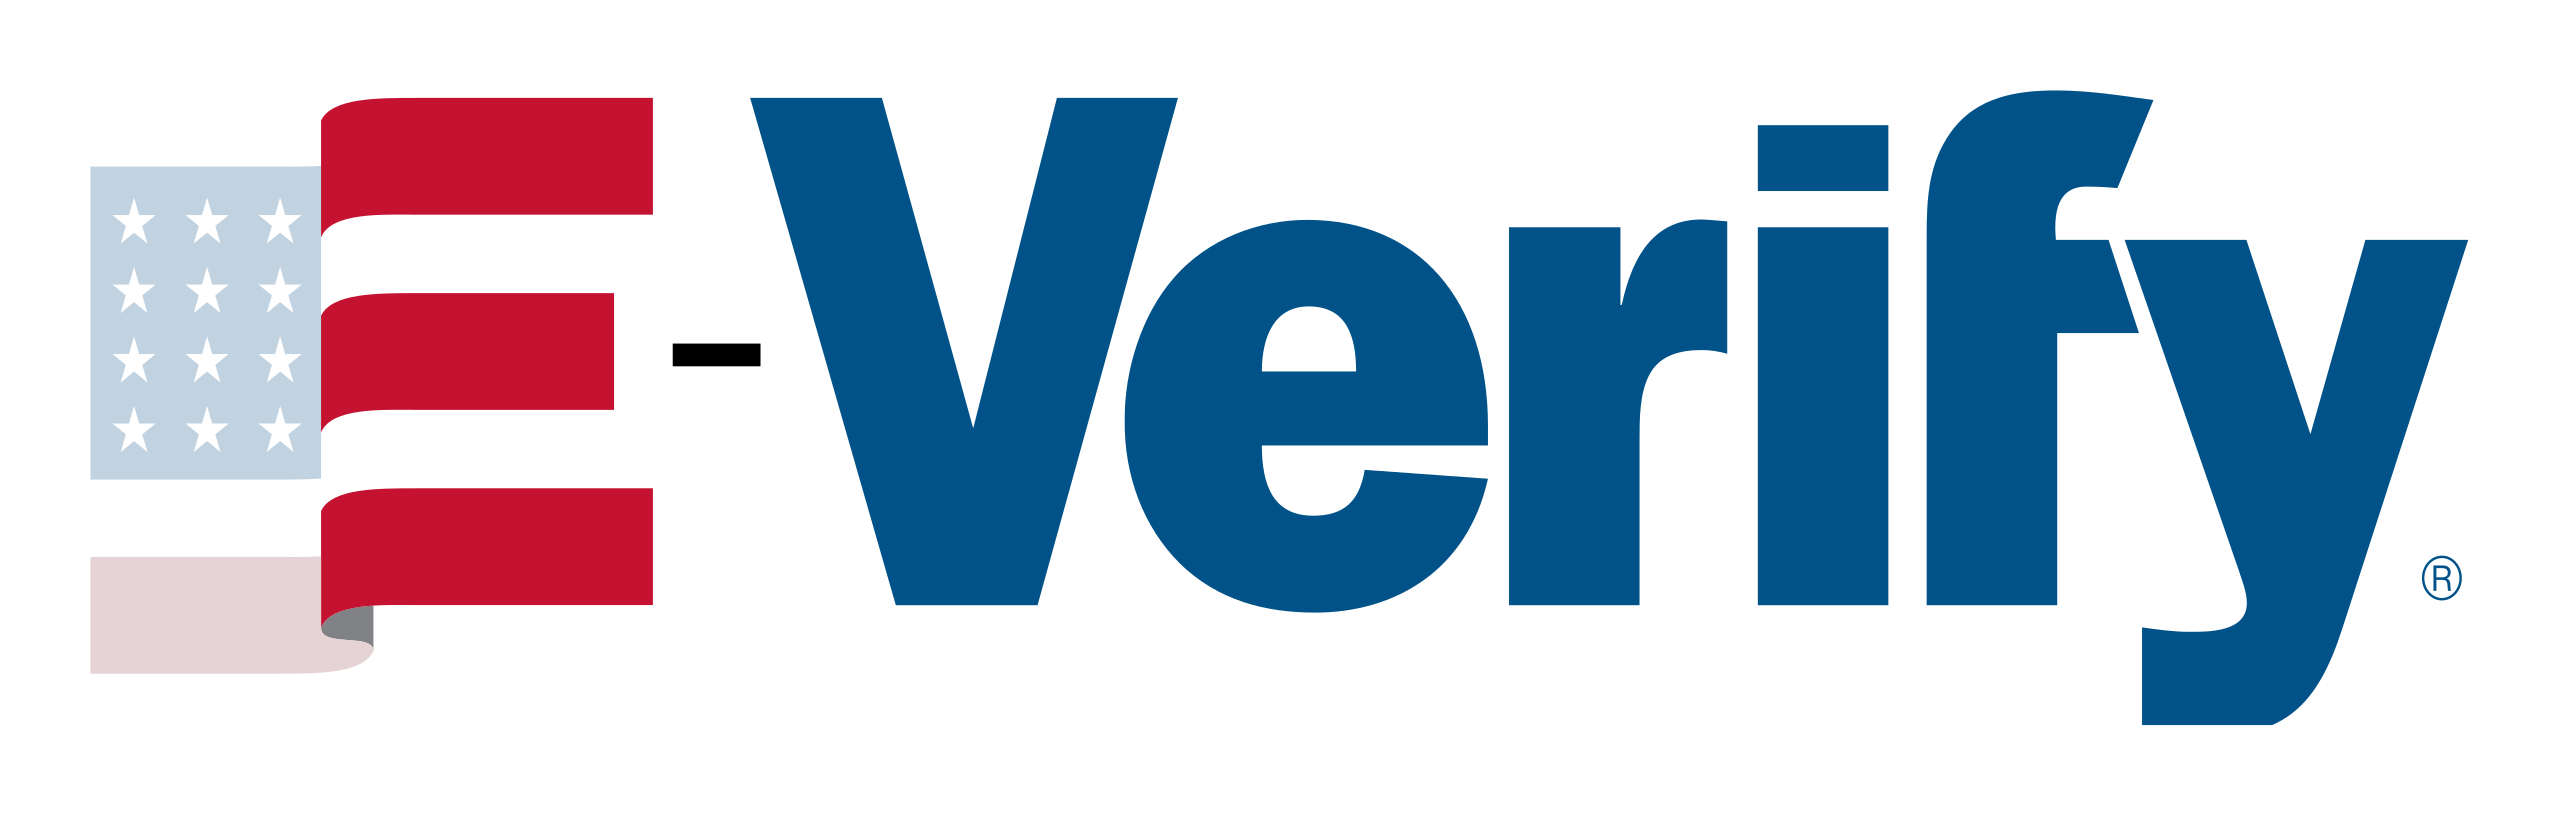 E-Verify_logo